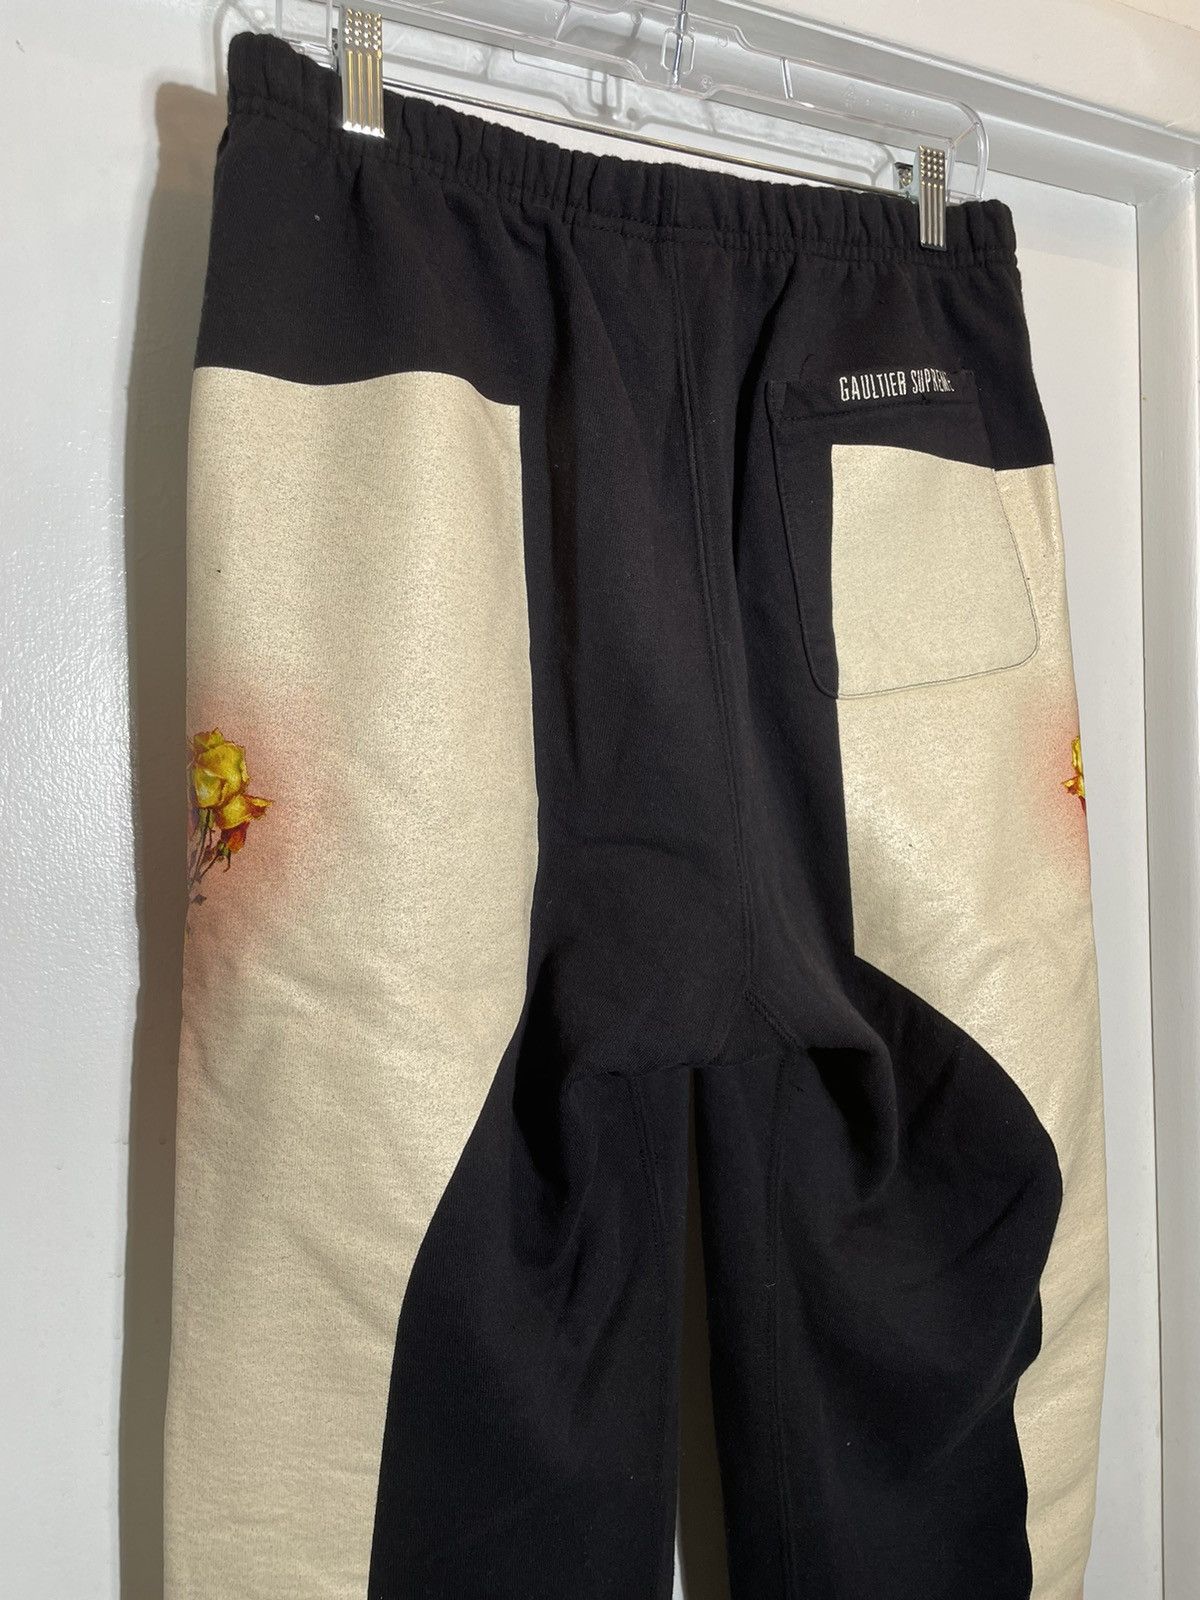 Supreme Supreme Jean Paul Gaultier Floral Sweatpants SS ‘19 Size US 32 / EU 48 - 7 Thumbnail